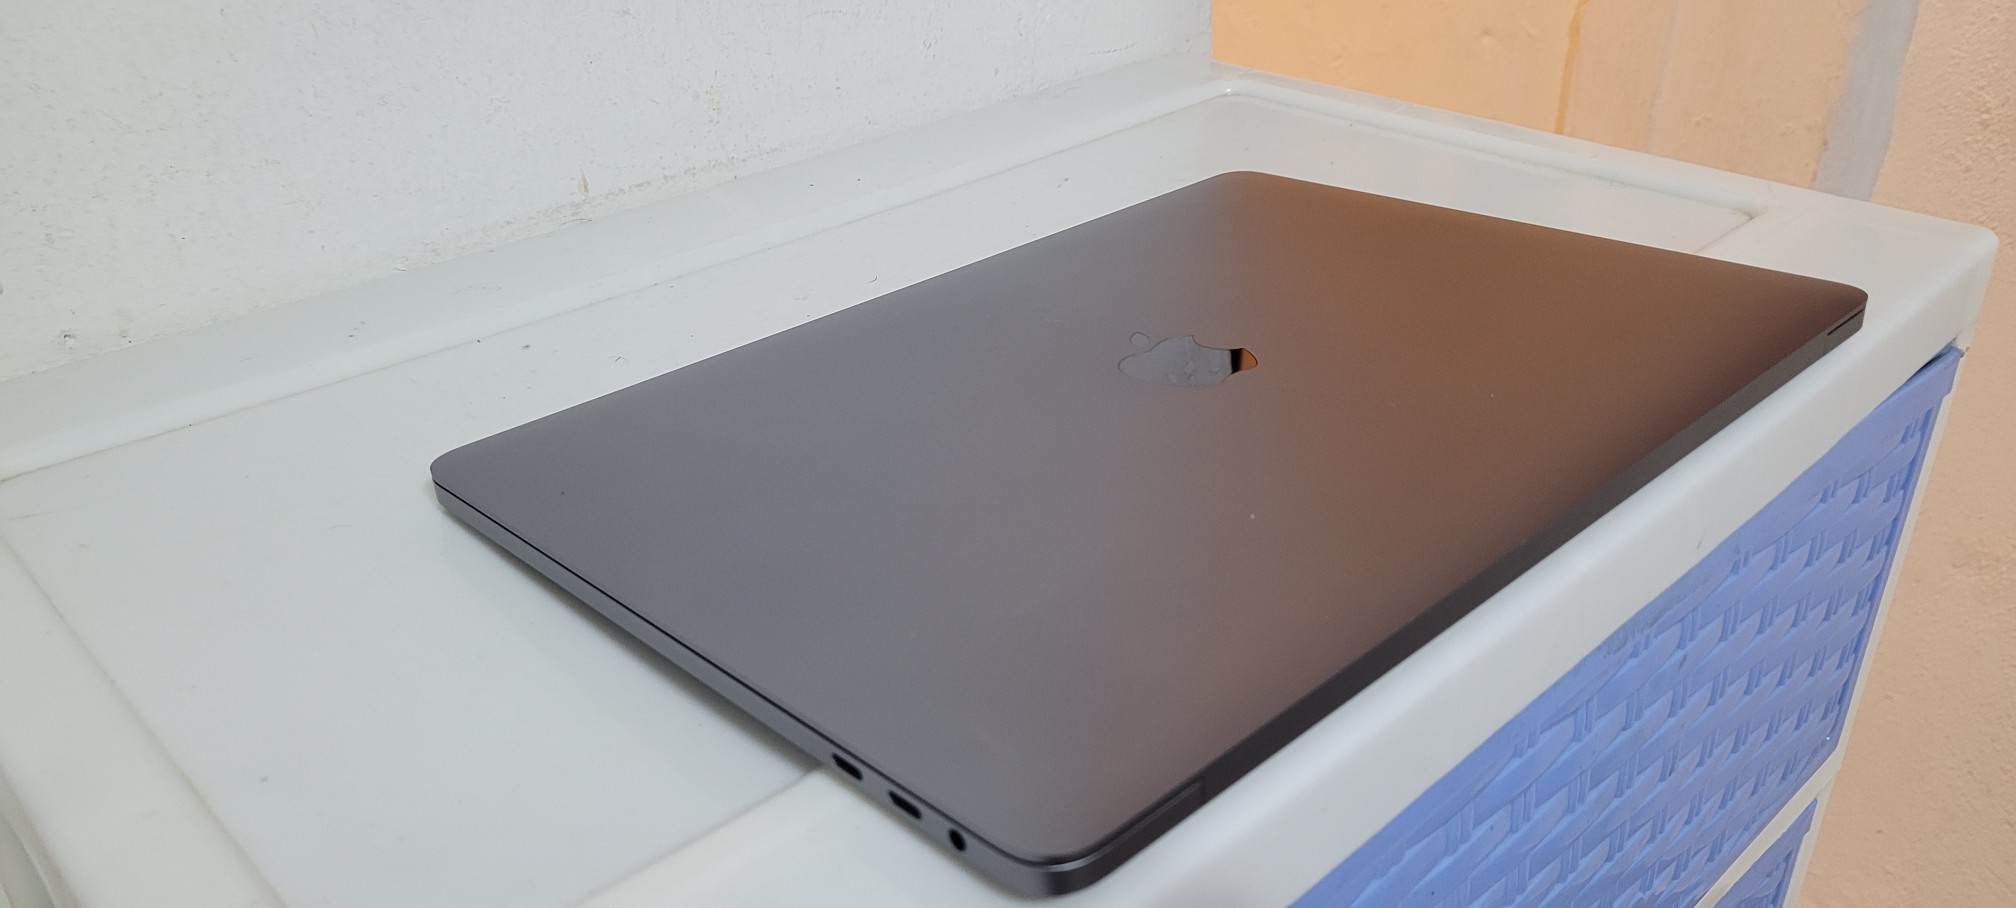 computadoras y laptops - Macbook pro A1989 13 Pulg Core i7 Ram 16gb Disco 512gb año 2018 2